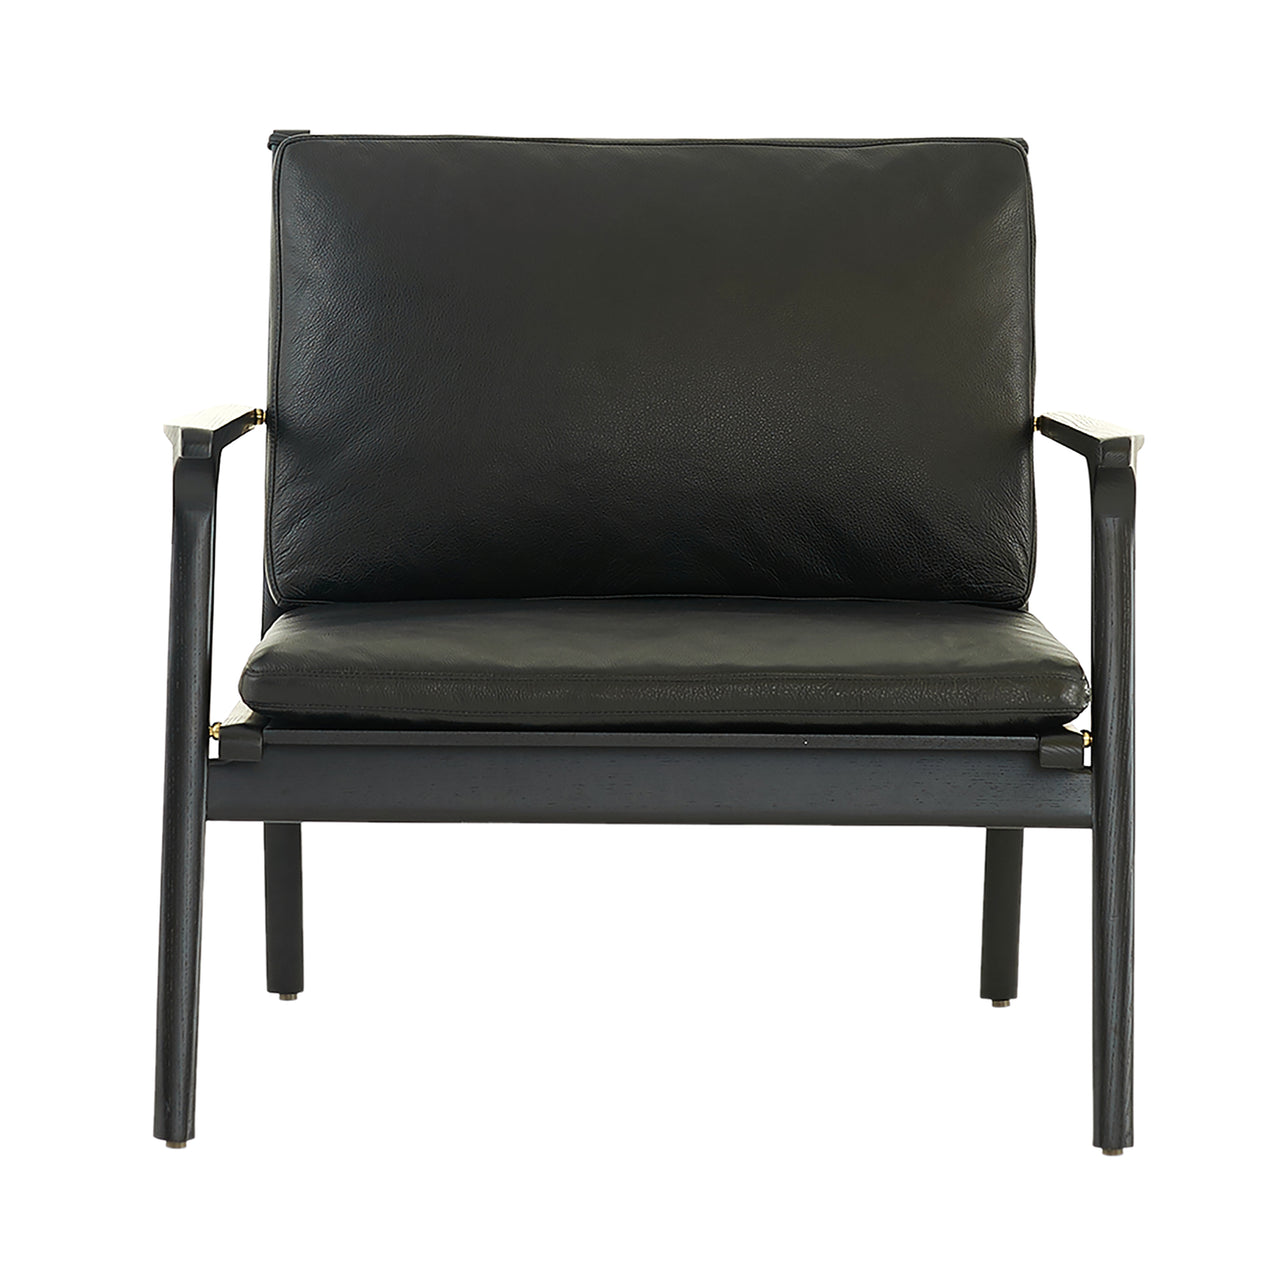 Ren Lounge Chair: Large + Black Oak